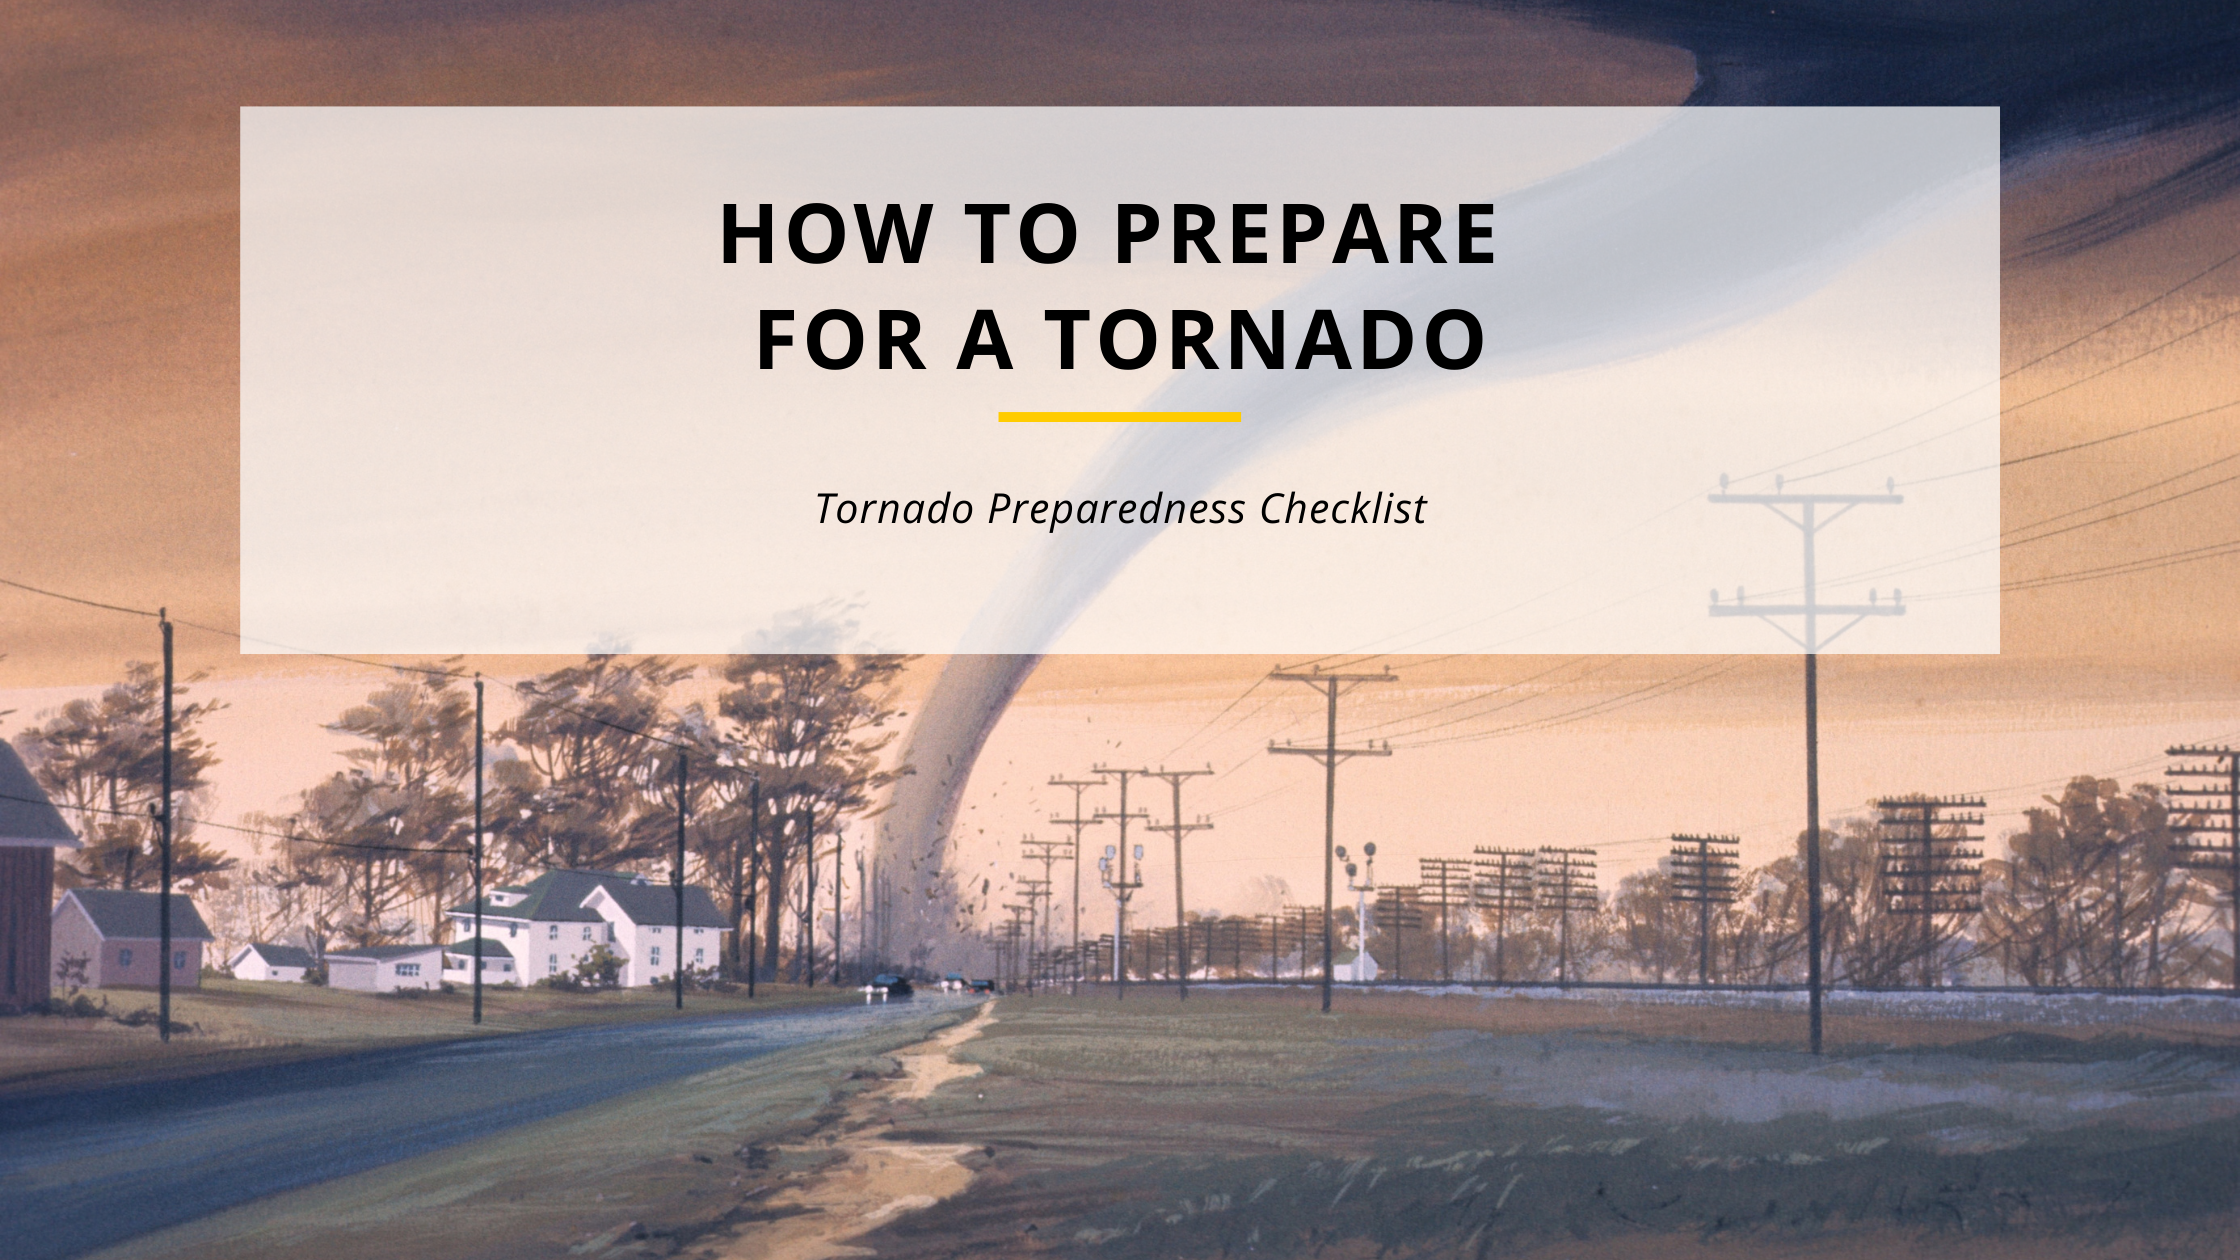 How to prepare your home for tornado season